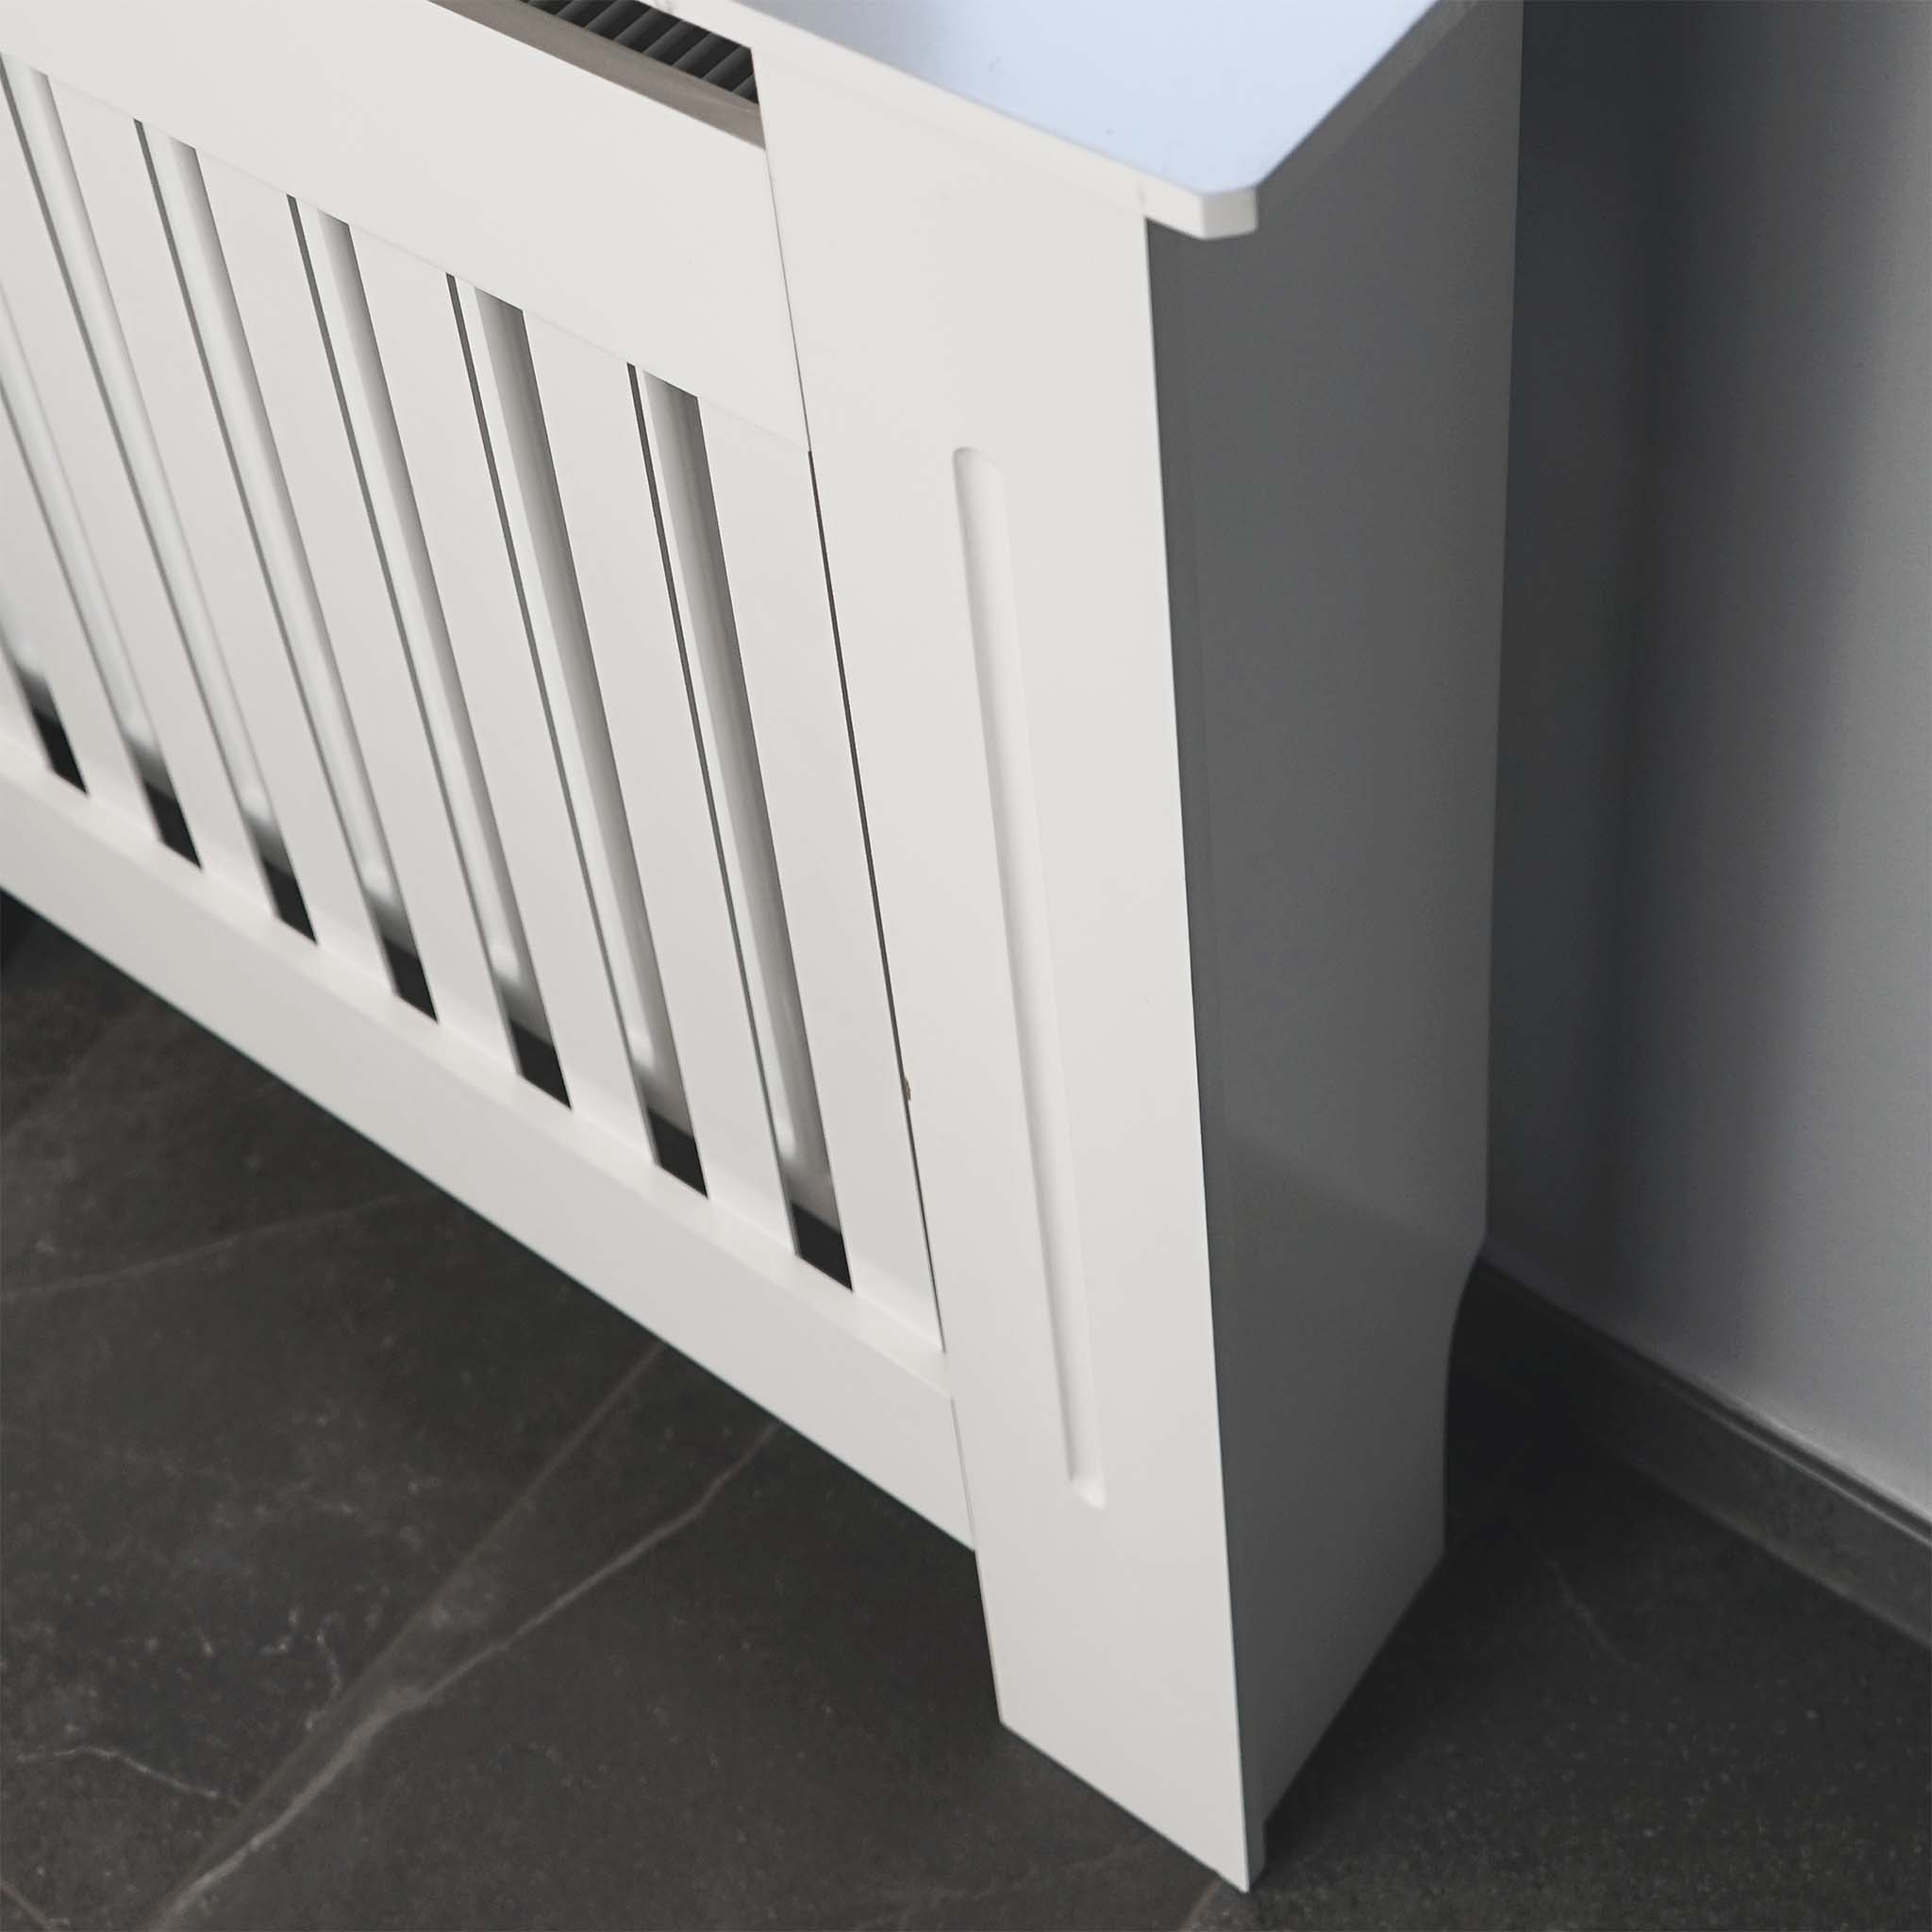  GOLINPEILO Cubierta de calefacción moderna para radiador, color  blanco, para sala de estar, dormitorio, gabinete de calefacción MDF, 44.1 x  7.5 x 32.1 pulgadas, diseño horizontal : Hogar y Cocina